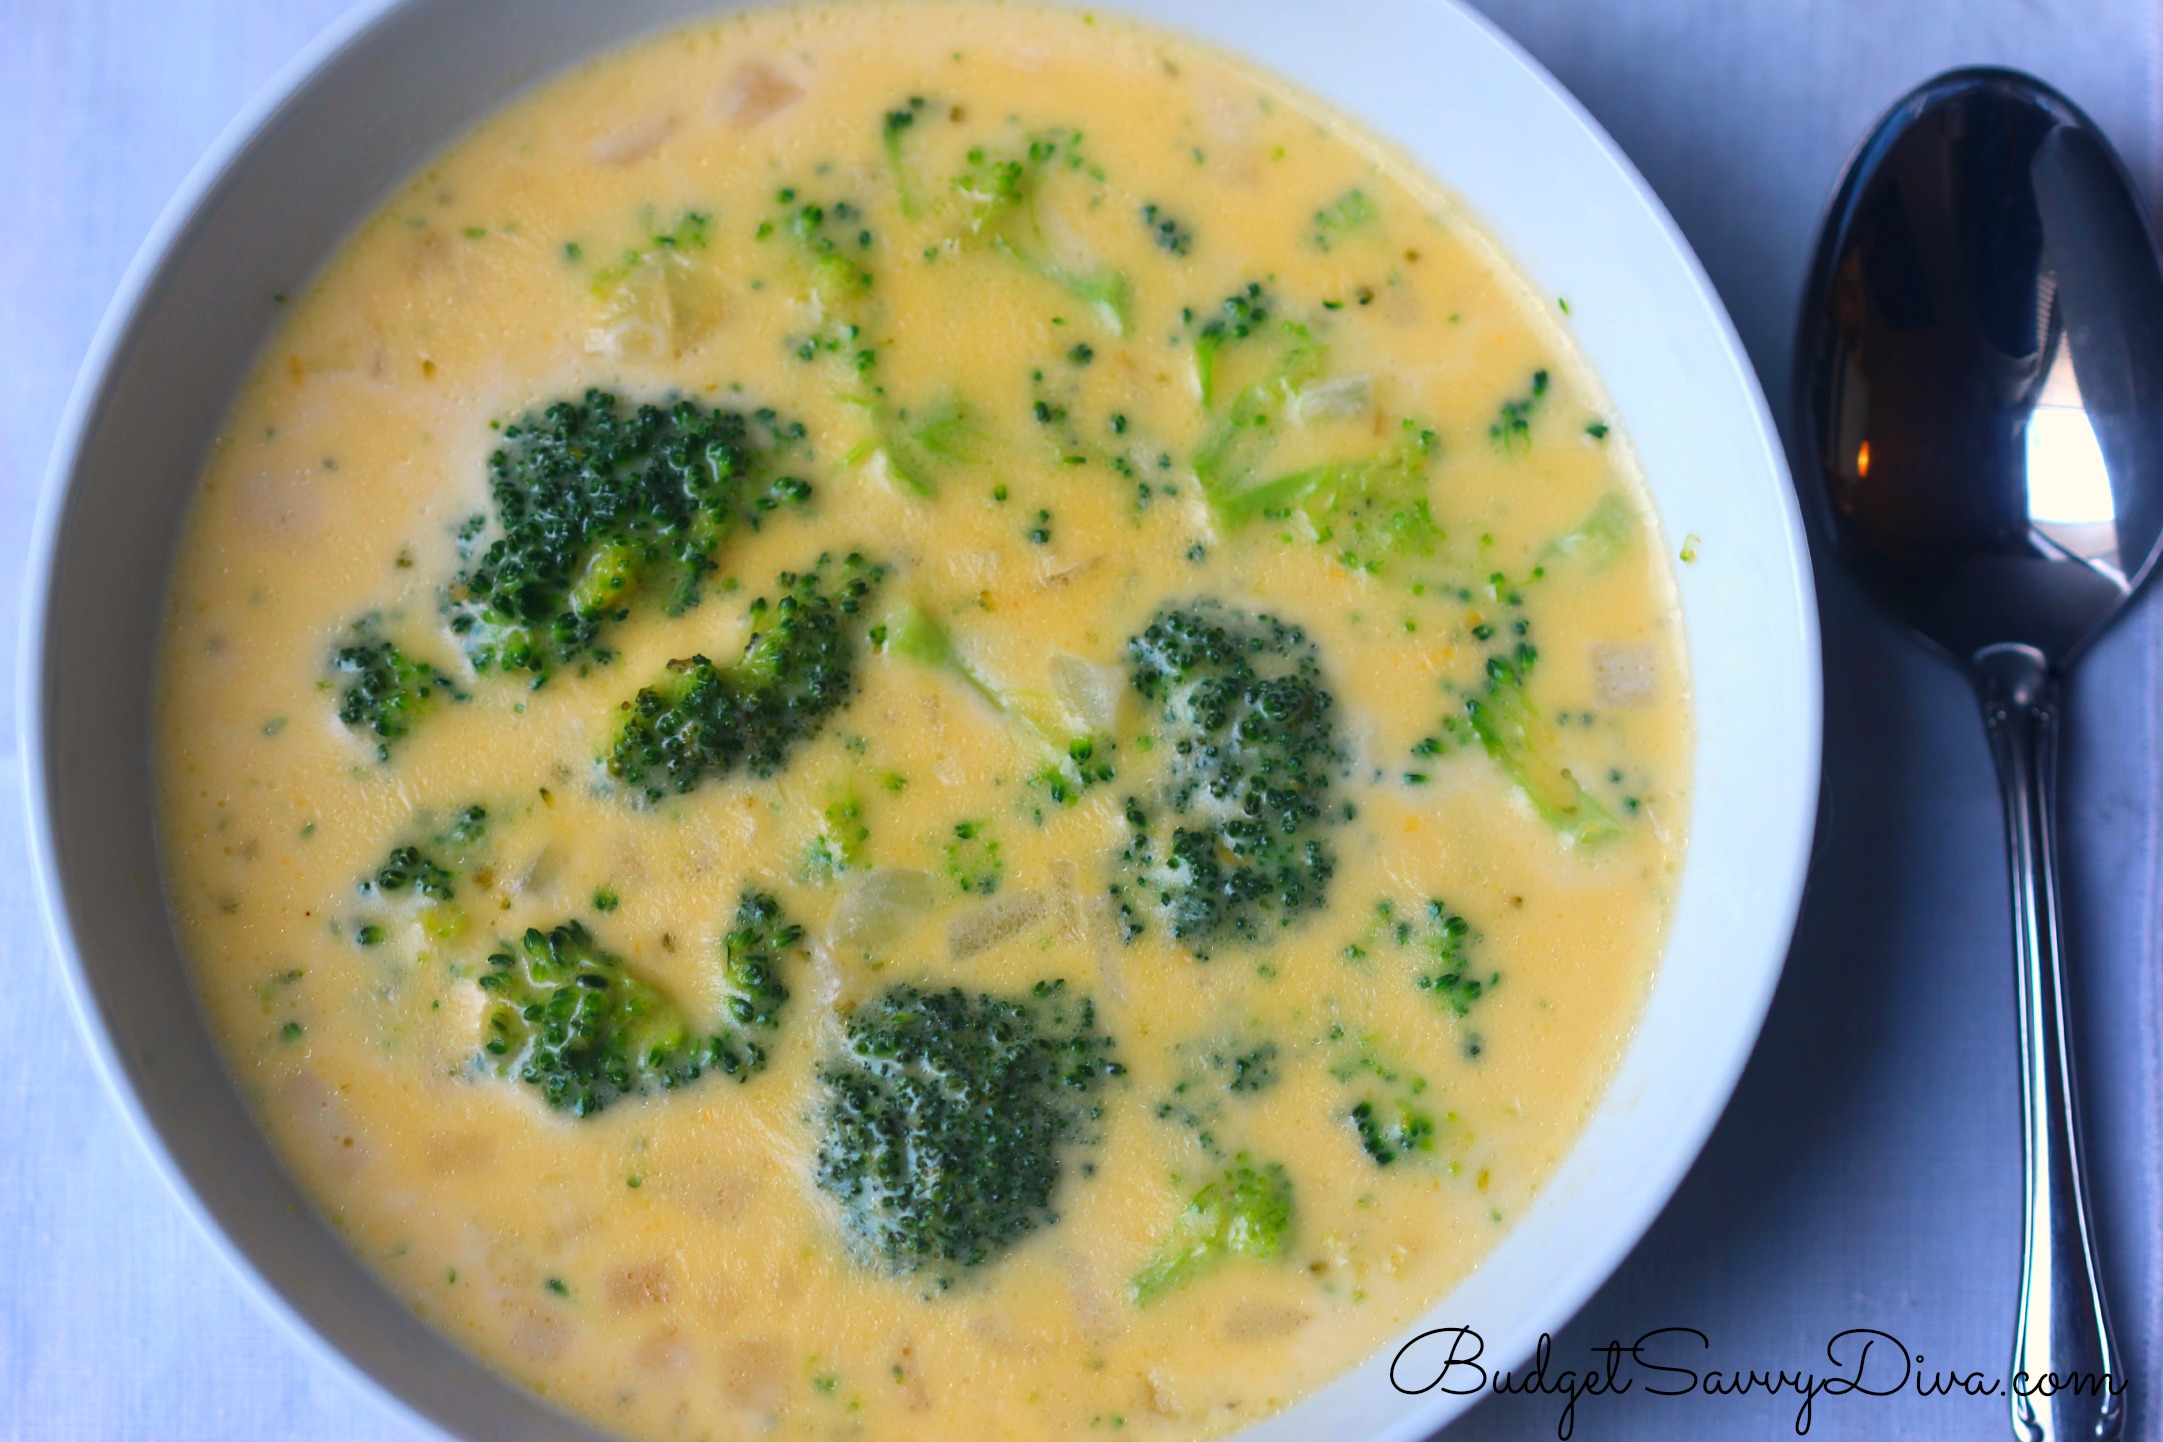 soup clipart broccoli soup